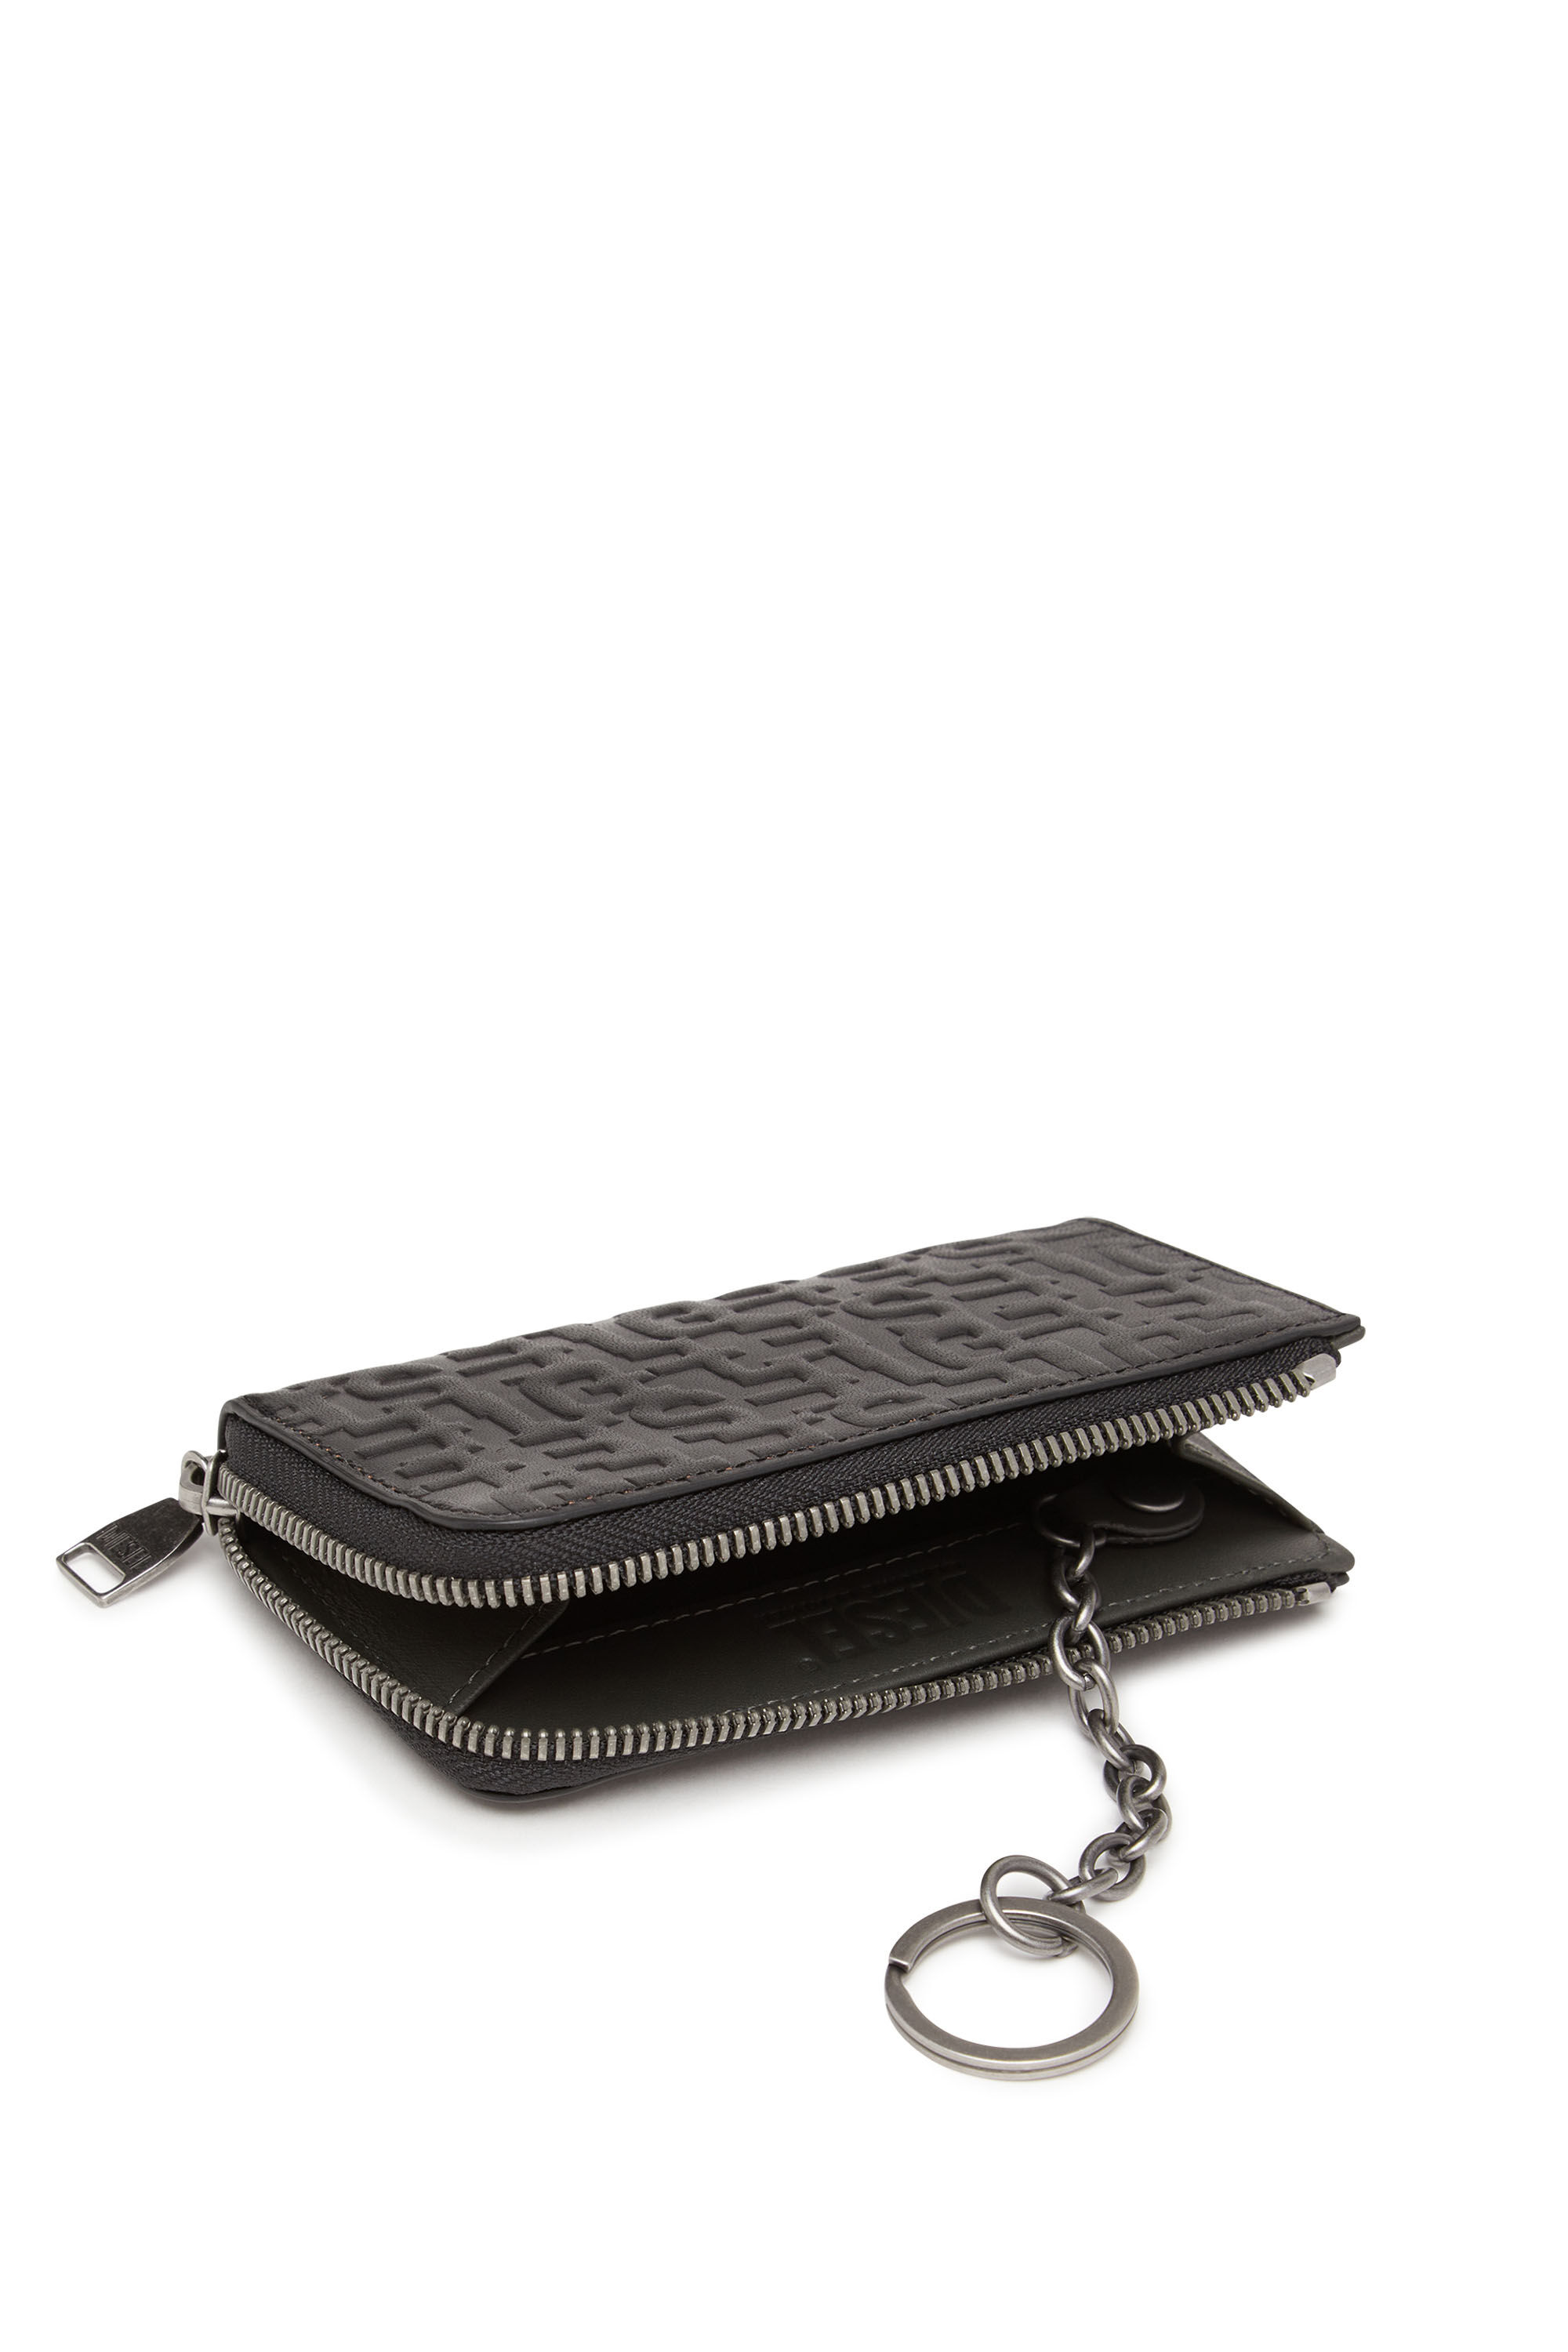 Louis Vuitton wallet CLASS - Kuwait online tindahan